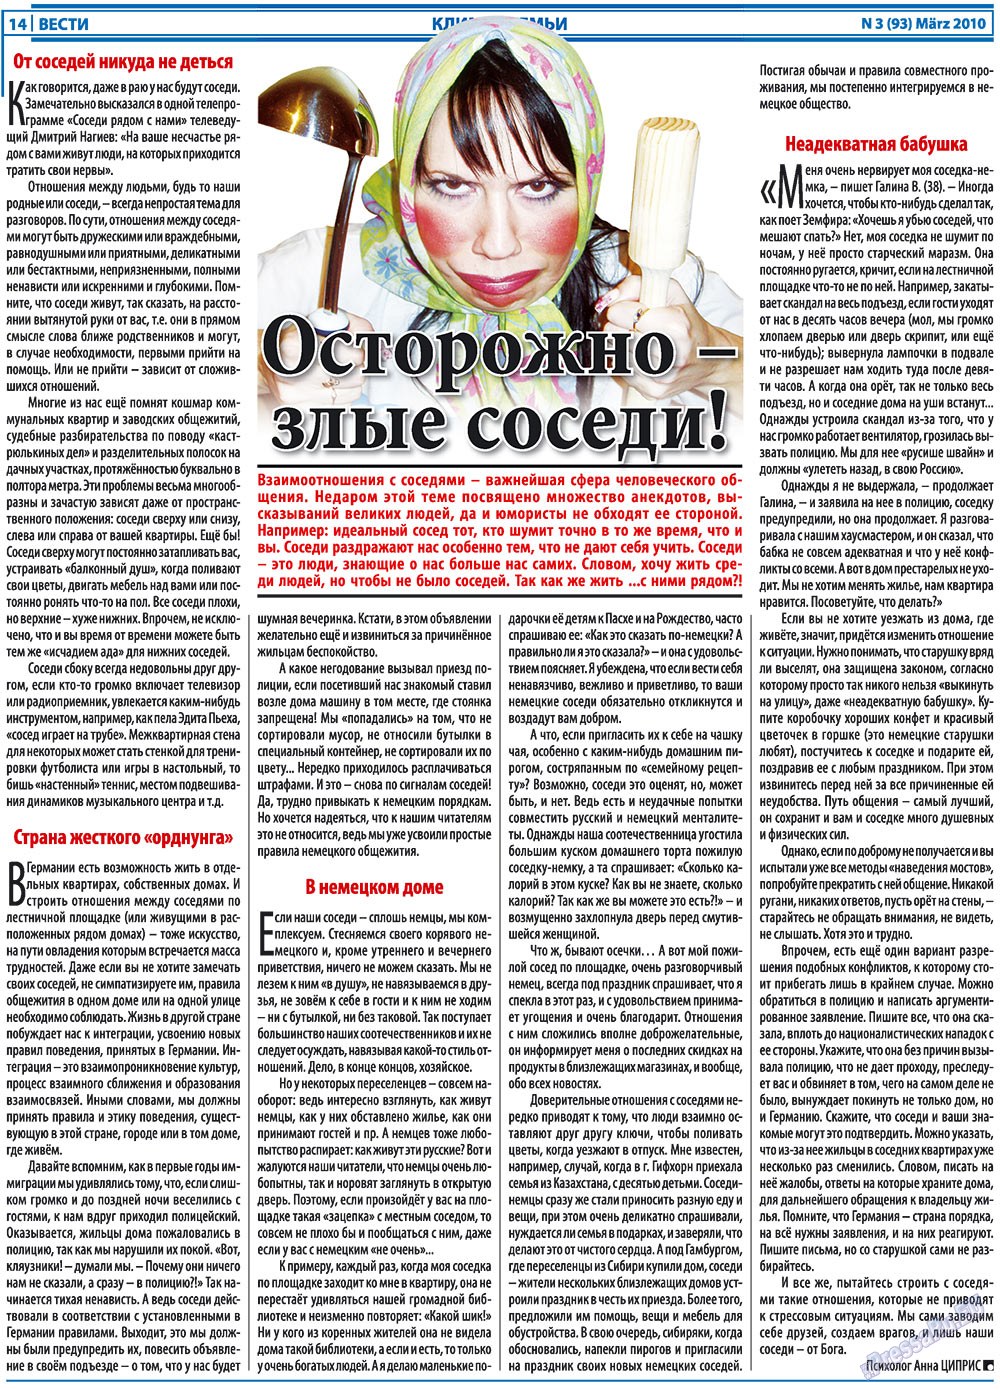 Вести, газета. 2010 №3 стр.14